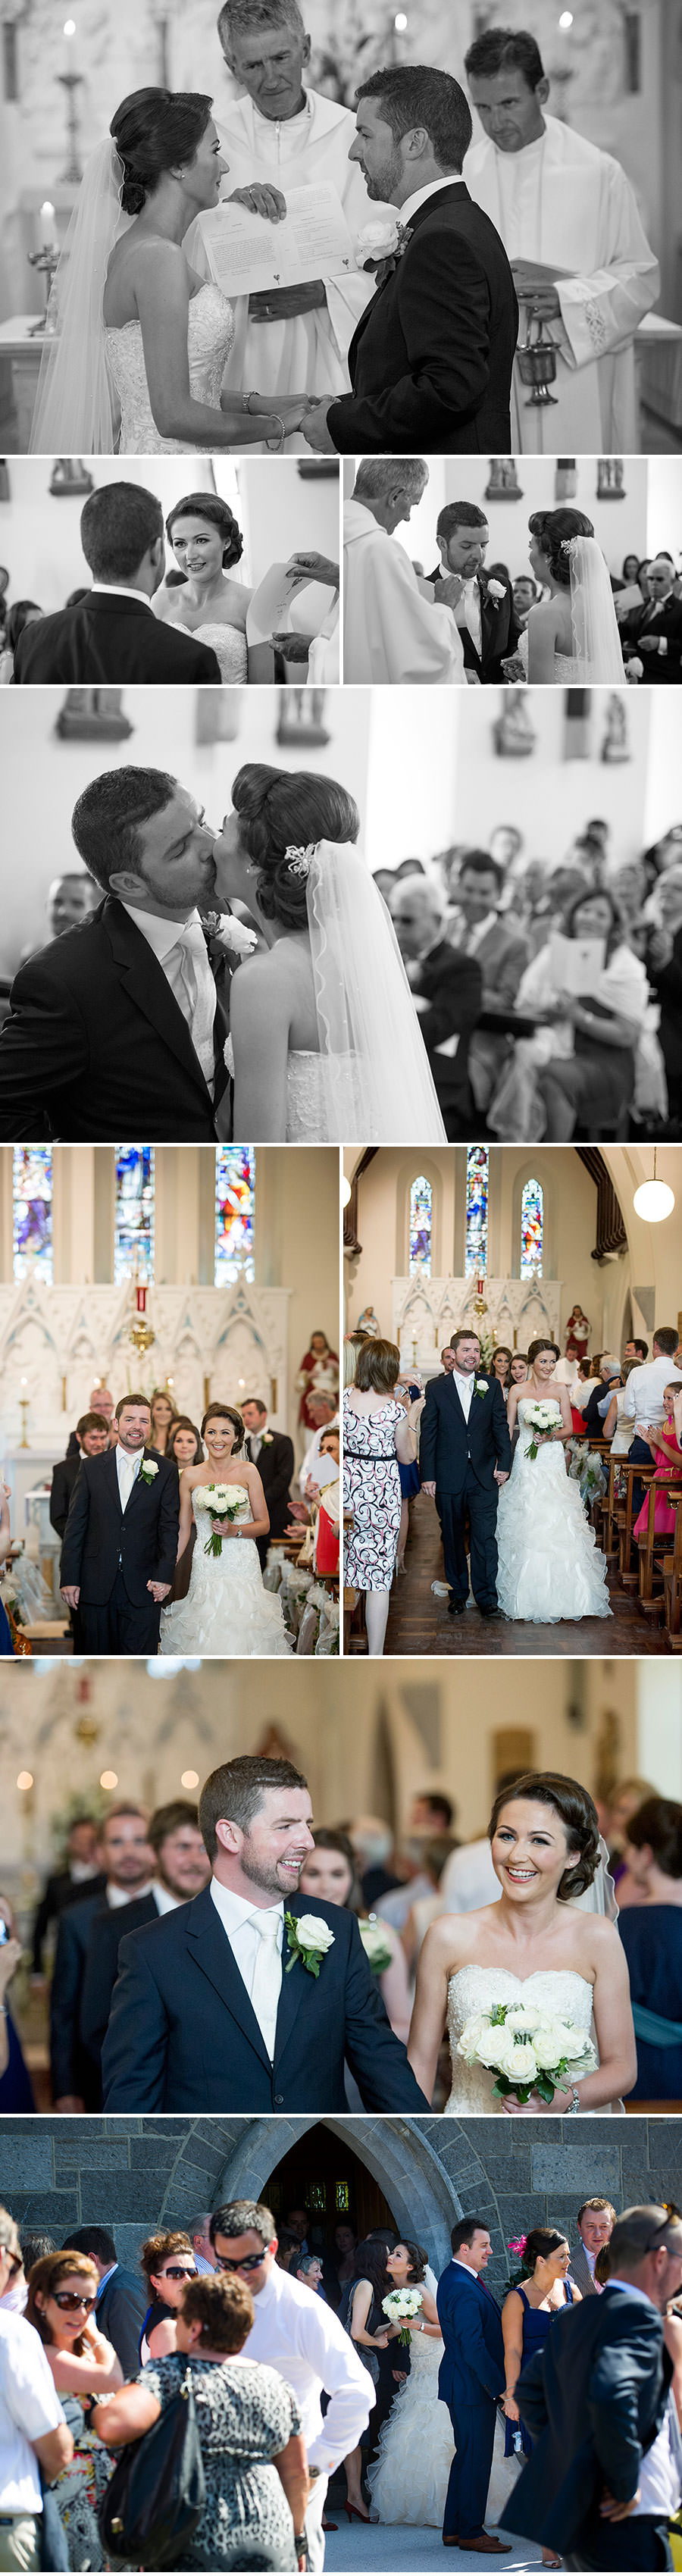 N + I | K Club Wedding | Dublin Wedding Photography | 18